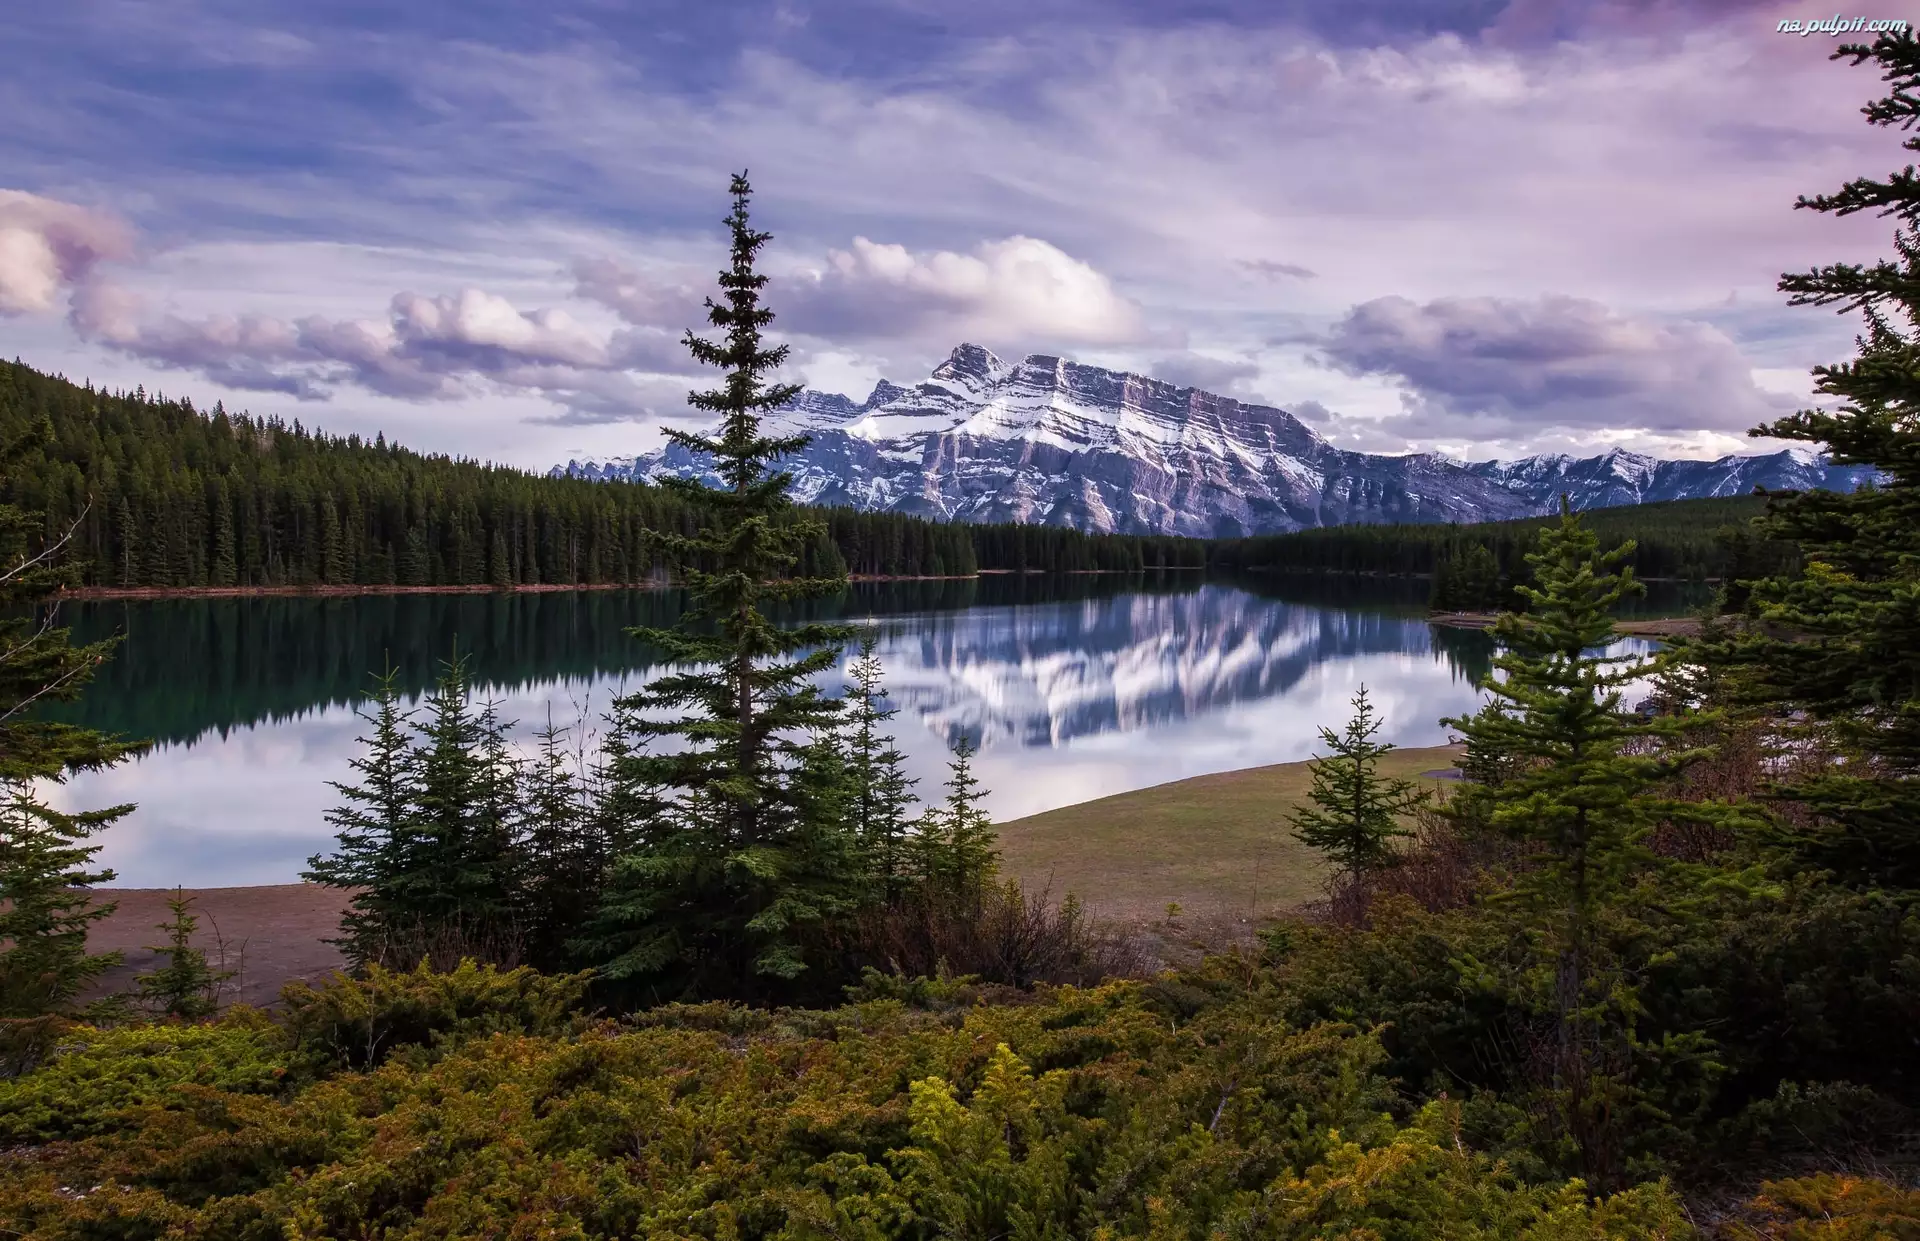 Park Narodowy Banff, Jezioro Vermilion, Świerki, Kanada, Lasy, Szczyt Mount Rundle, Góry